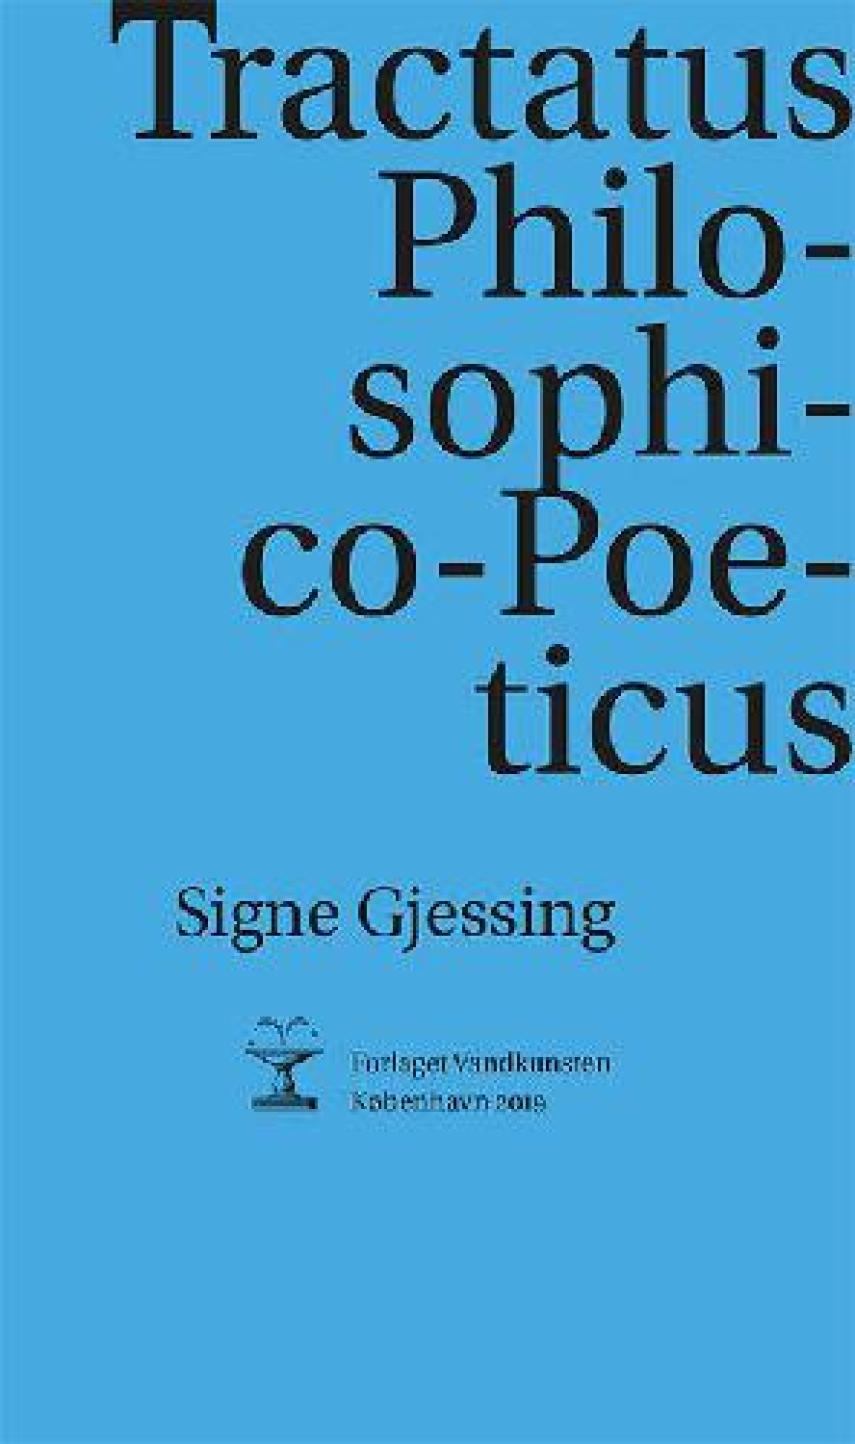 Signe Gjessing: Tractatus philosophico-poeticus